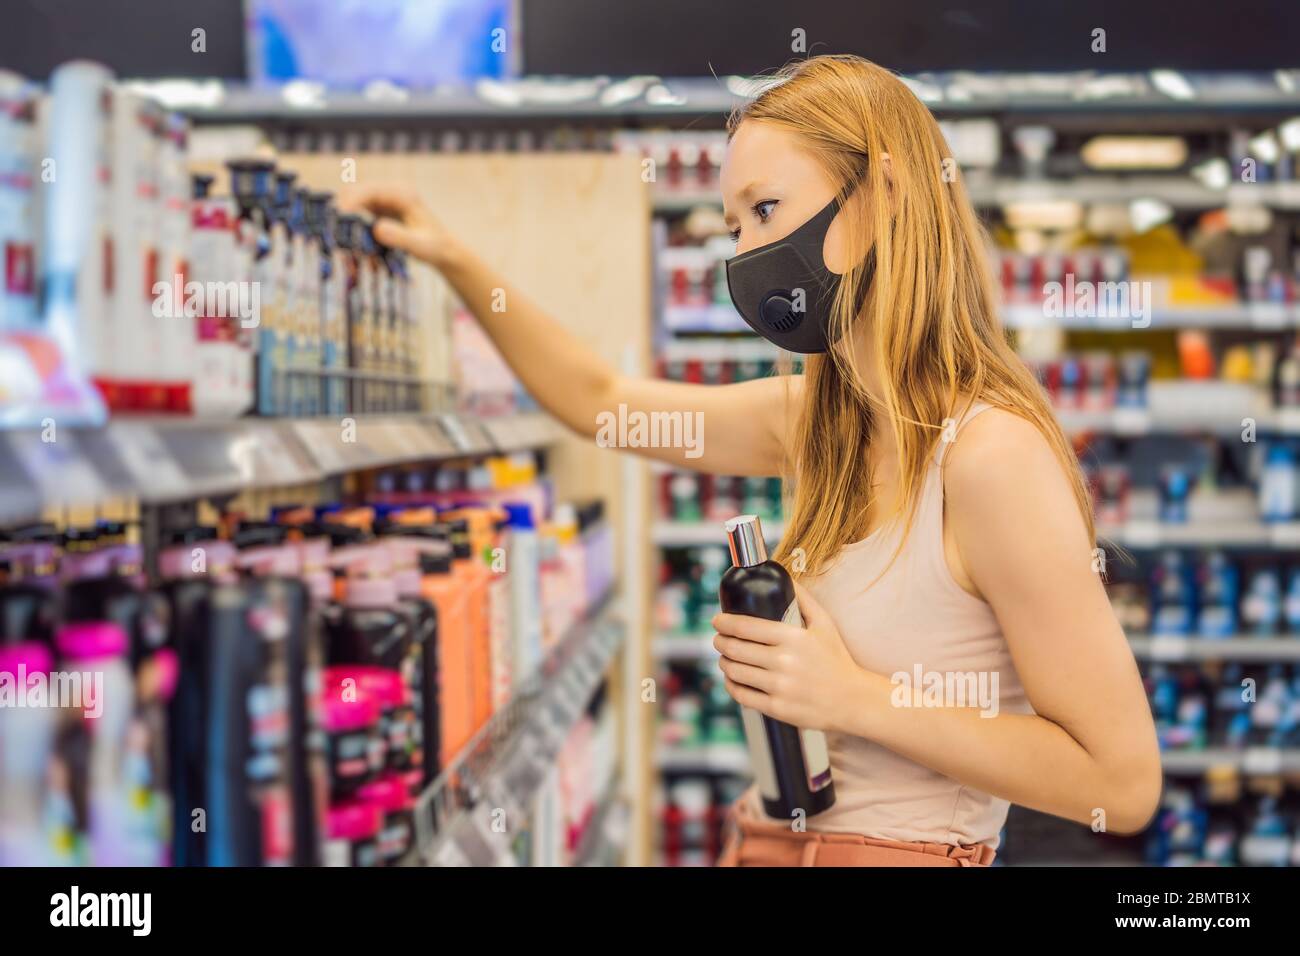 Une femme alarmée porte un masque médical contre le coronavirus lors de l'achat de produits chimiques domestiques dans les supermarchés ou les magasins, en santé, sécurité et pandémie Banque D'Images